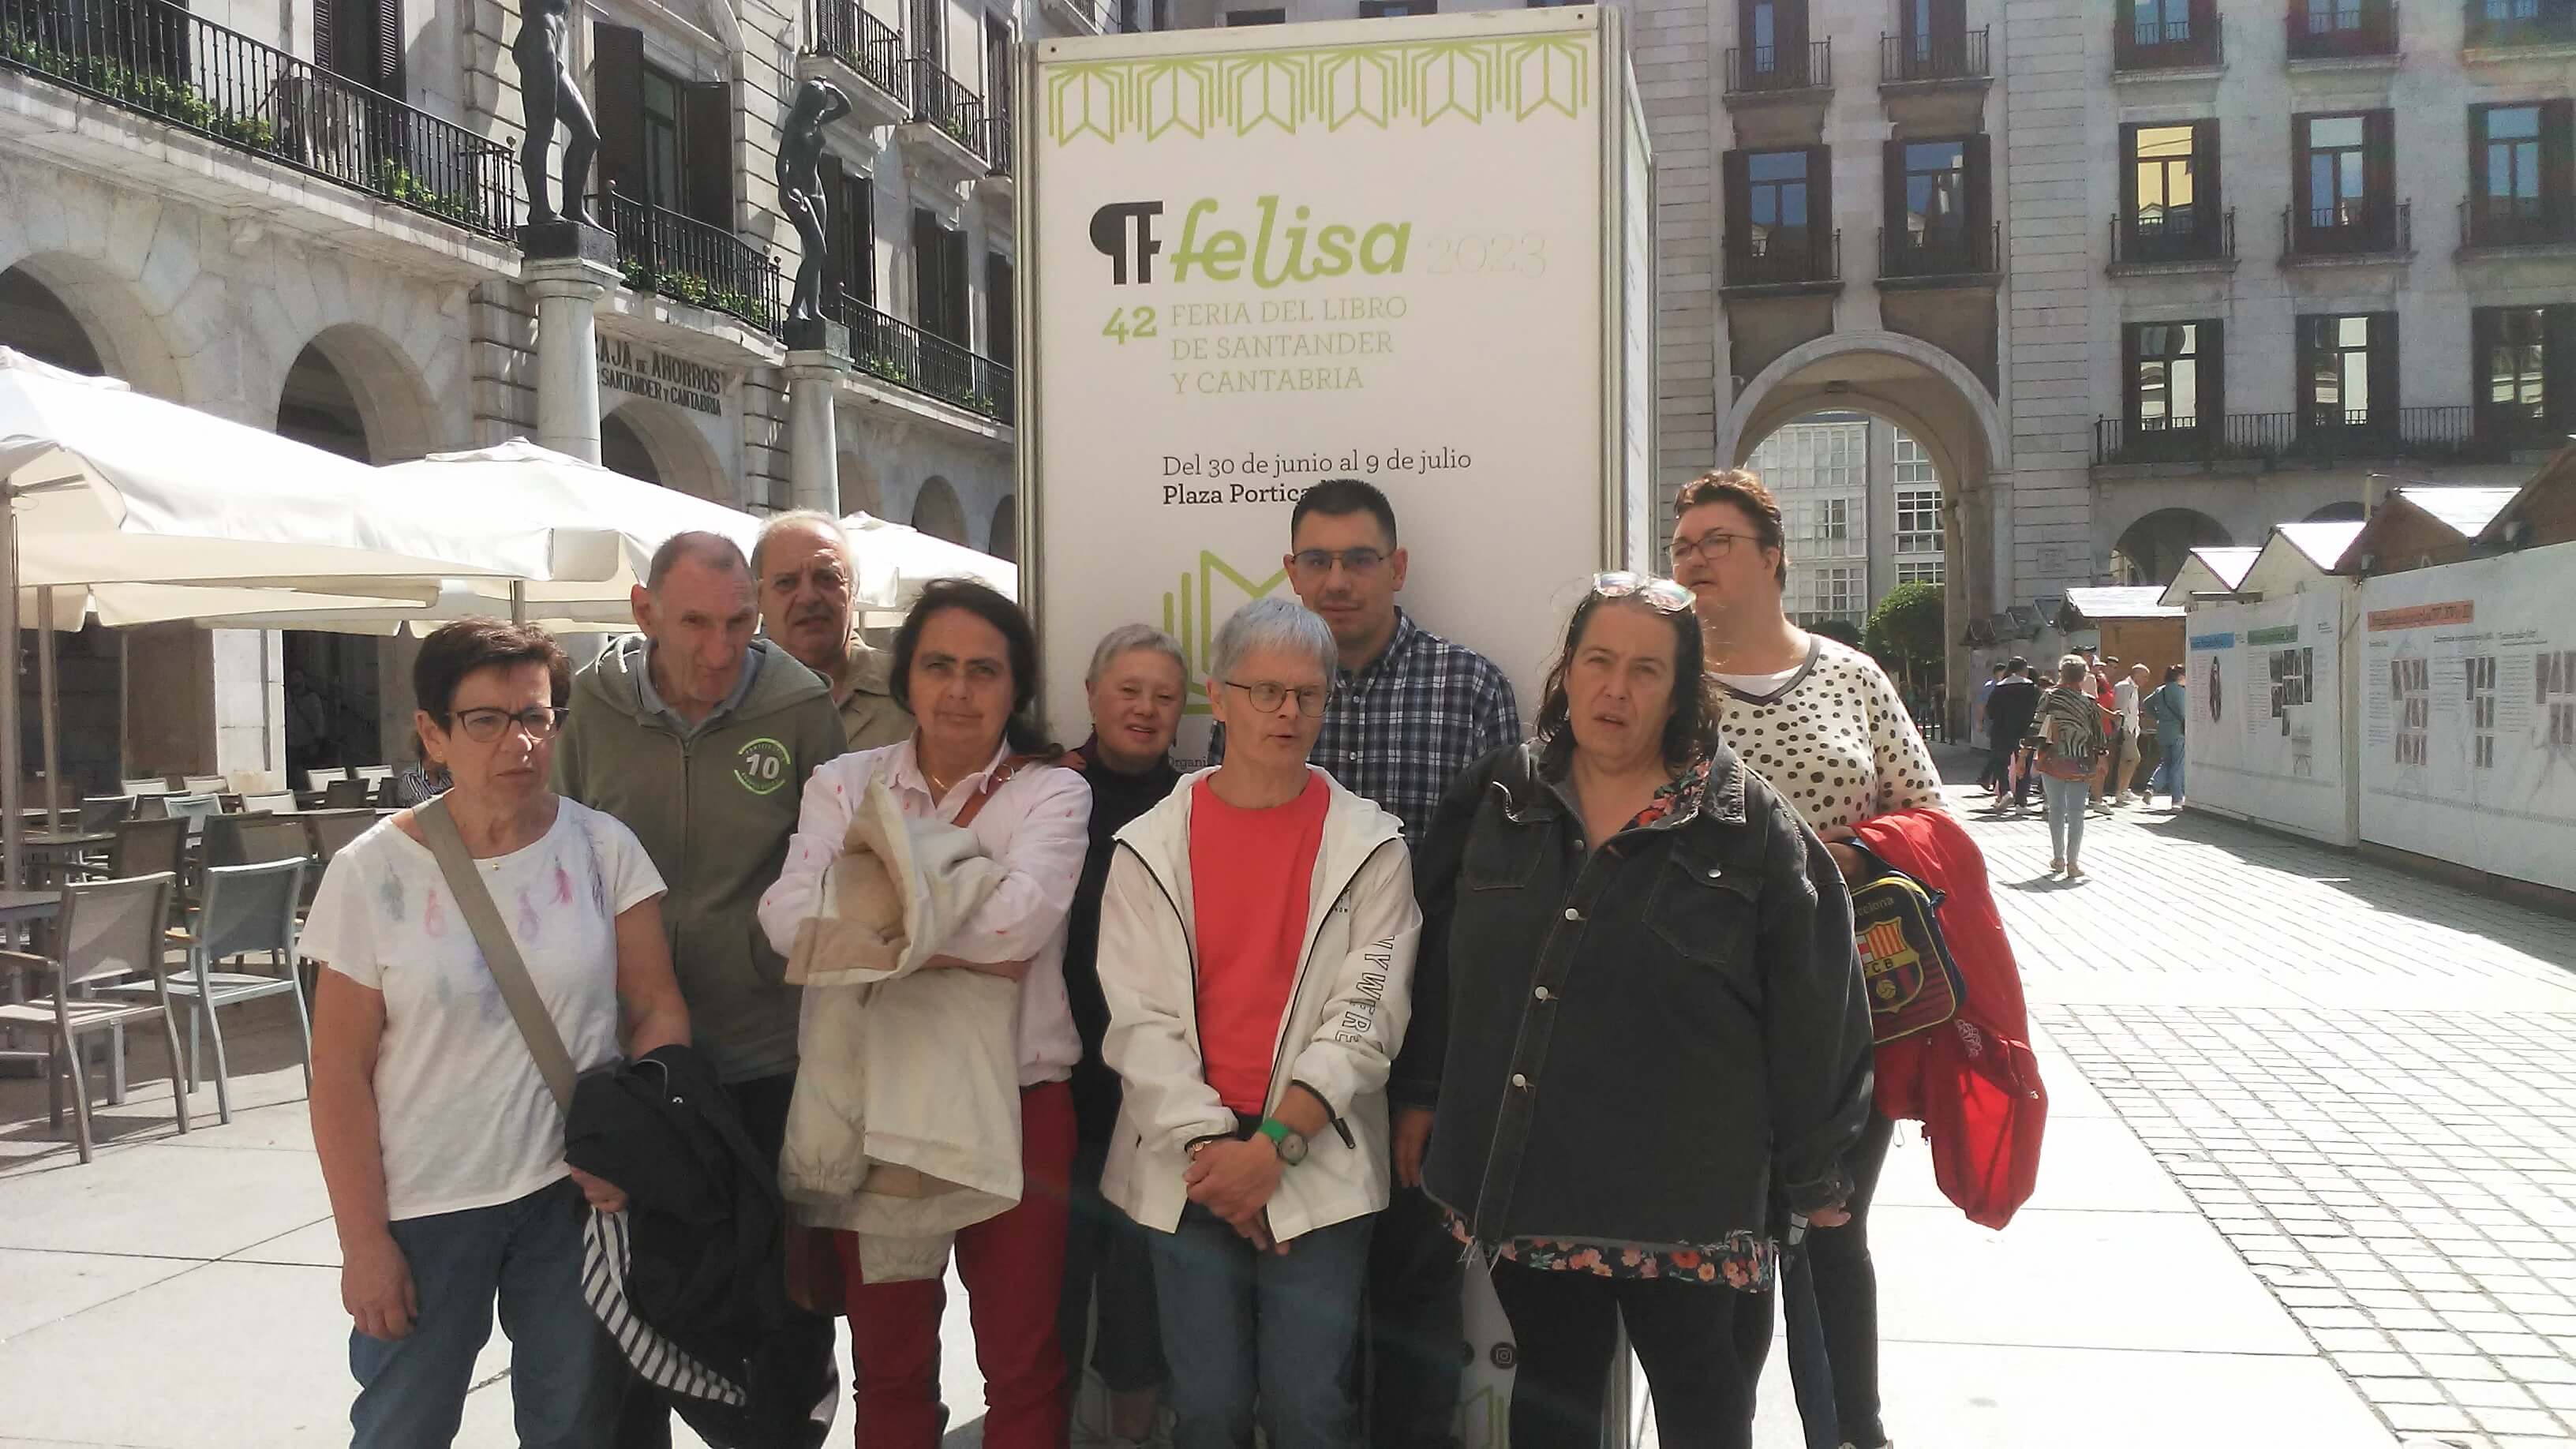  Visitamos Felisa, la Feria del Libro de Santander y Cantabria